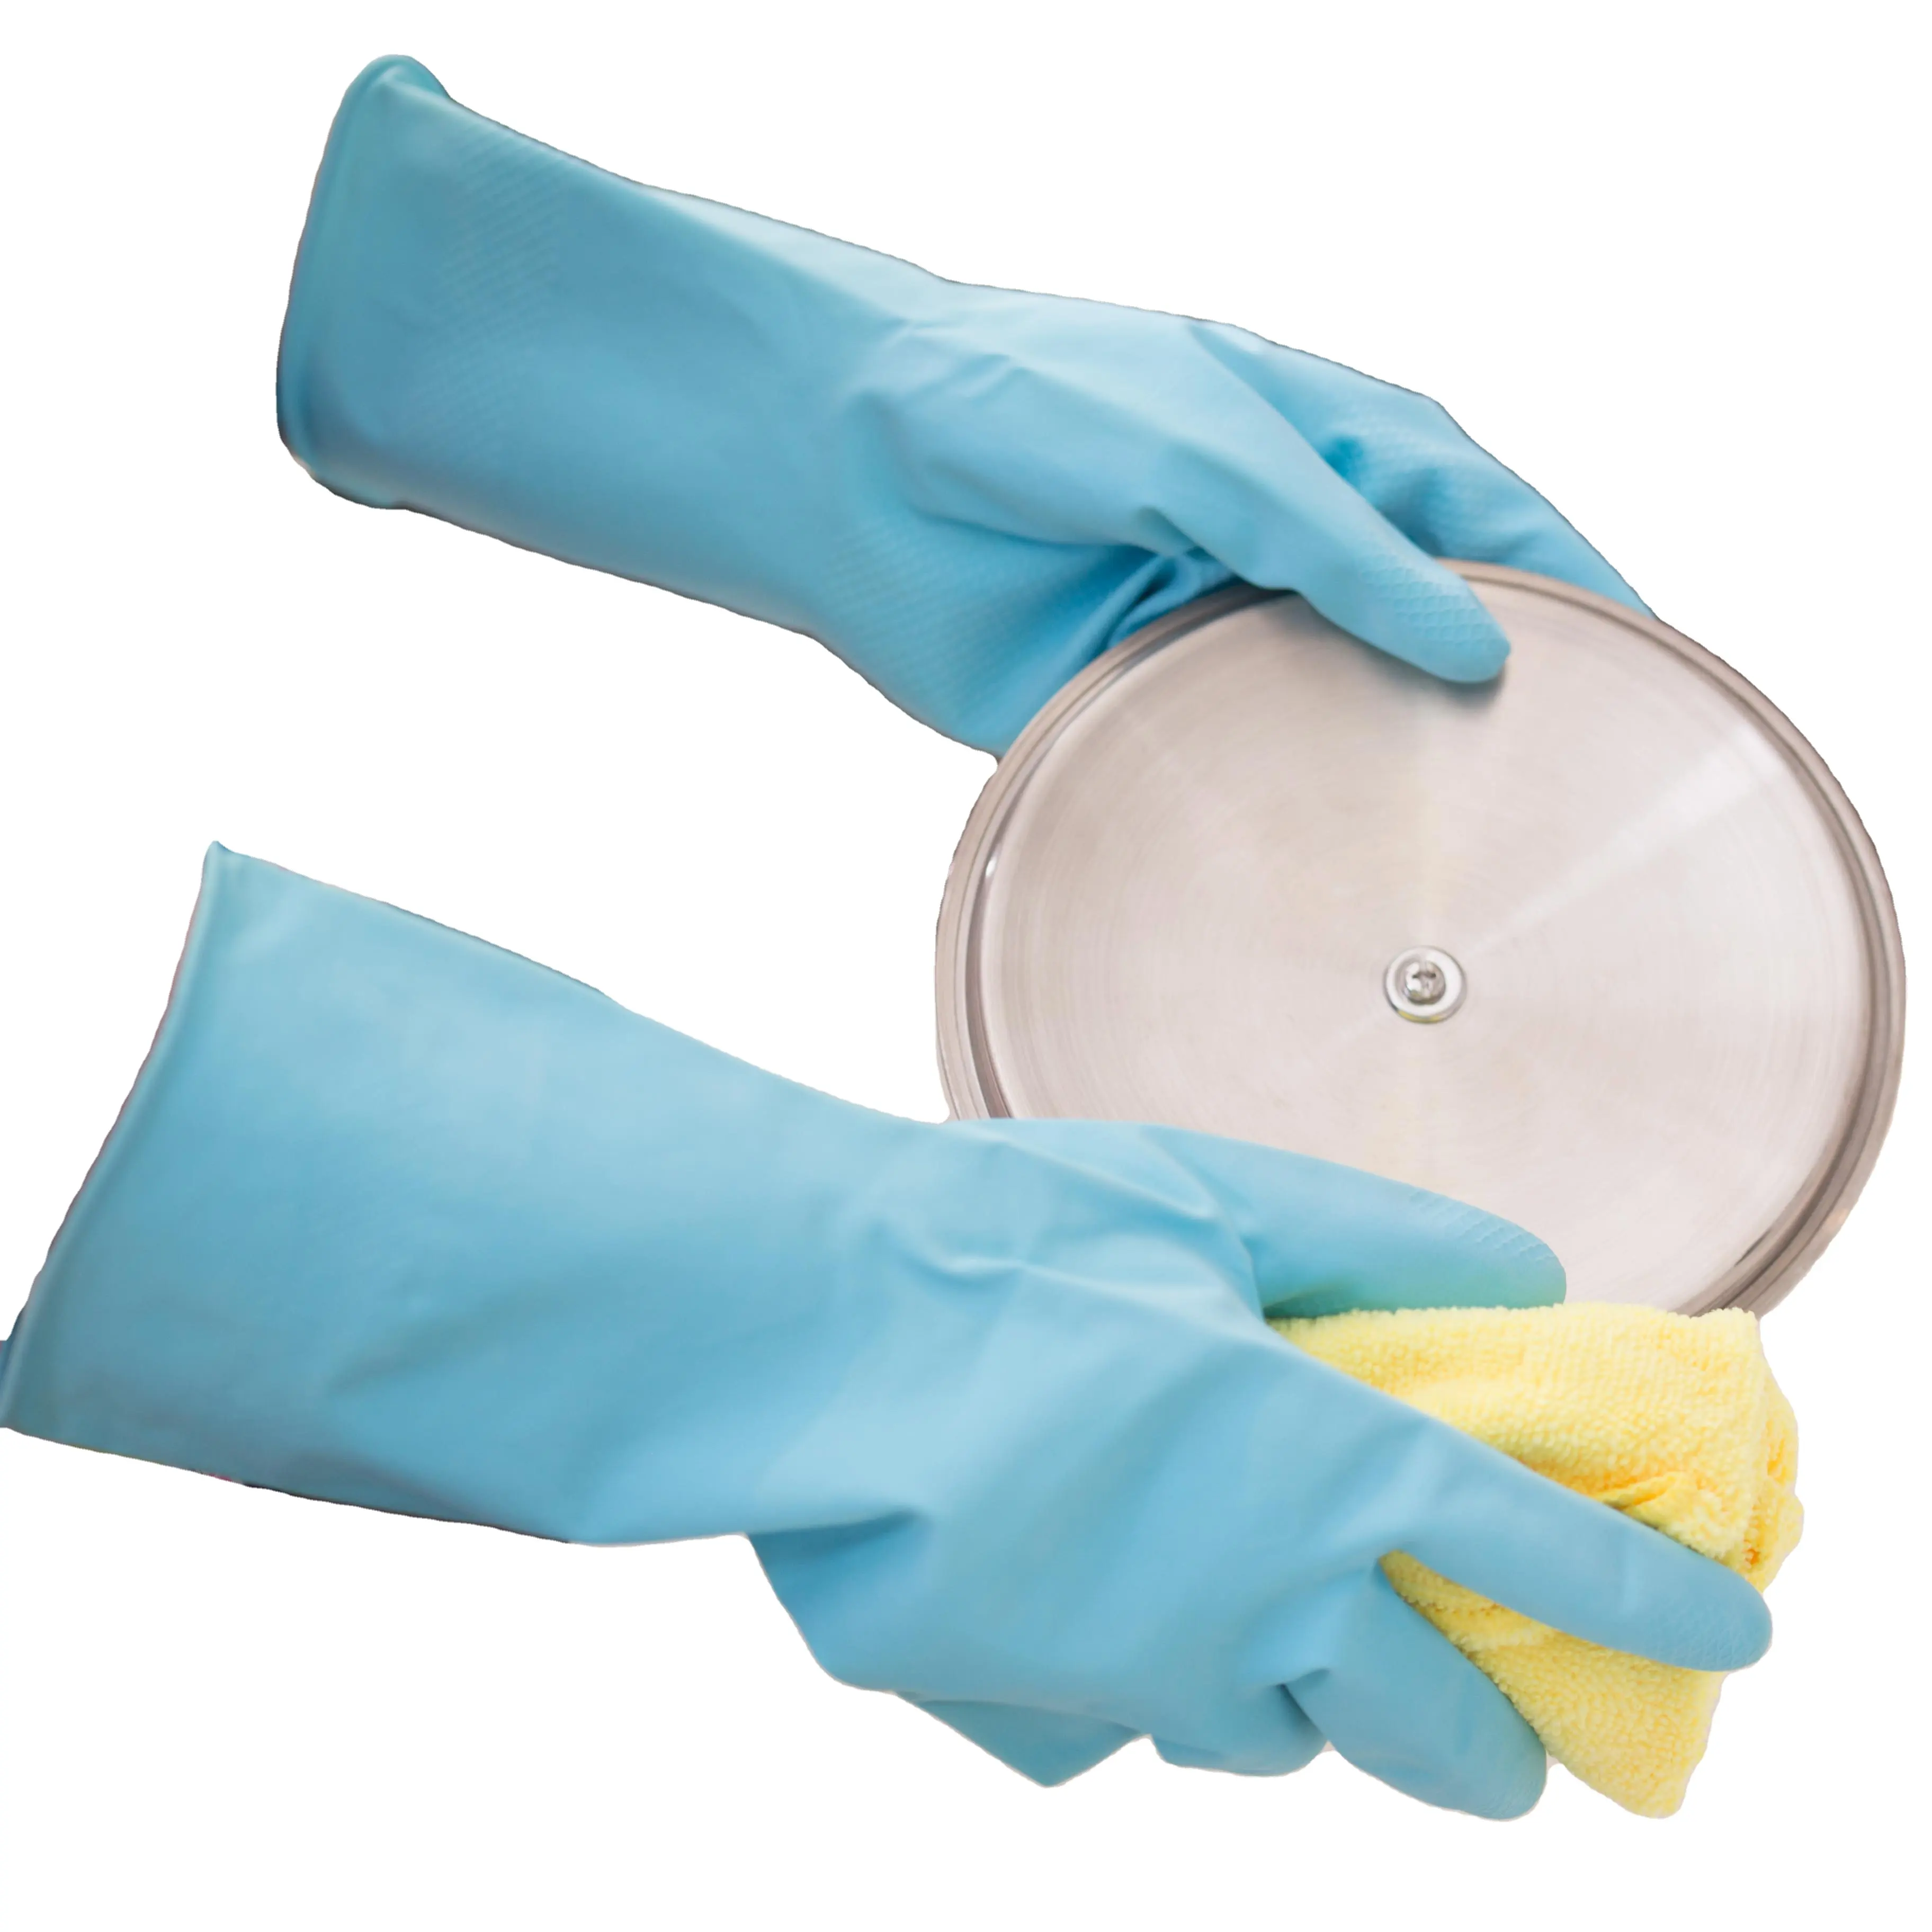 Die meist verkauften Haushalts reinigungs küchen handschuhe und Geschirrs pül handschuhe sind wieder verwendbare Produkte und können wasserdicht sein